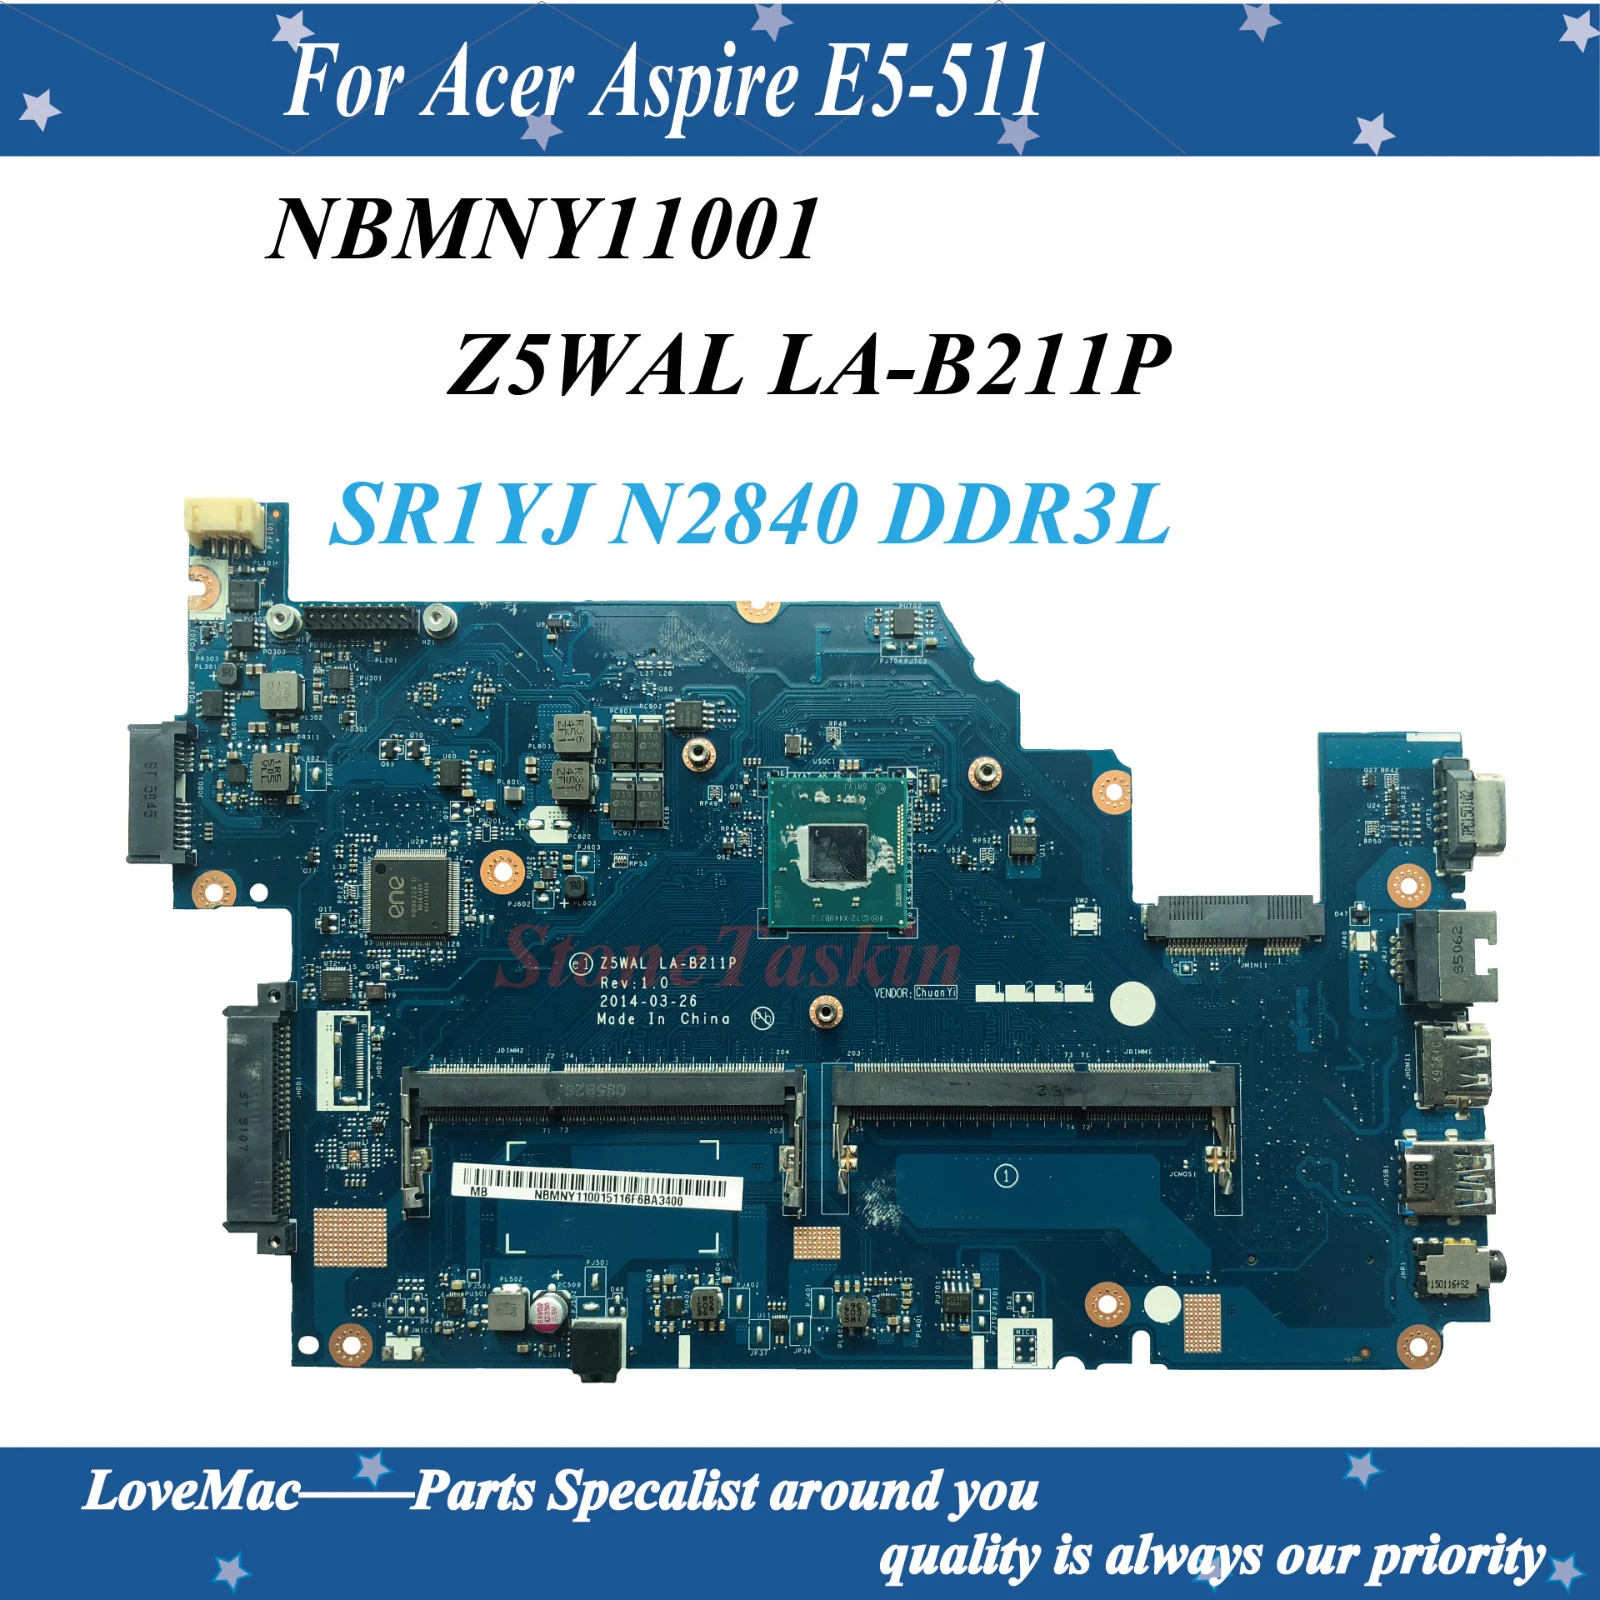    Z5WAL LA-B211P   Acer Aspire E5-511 NBMNY11001 SR1YJ N2840 DDR3L 100% 